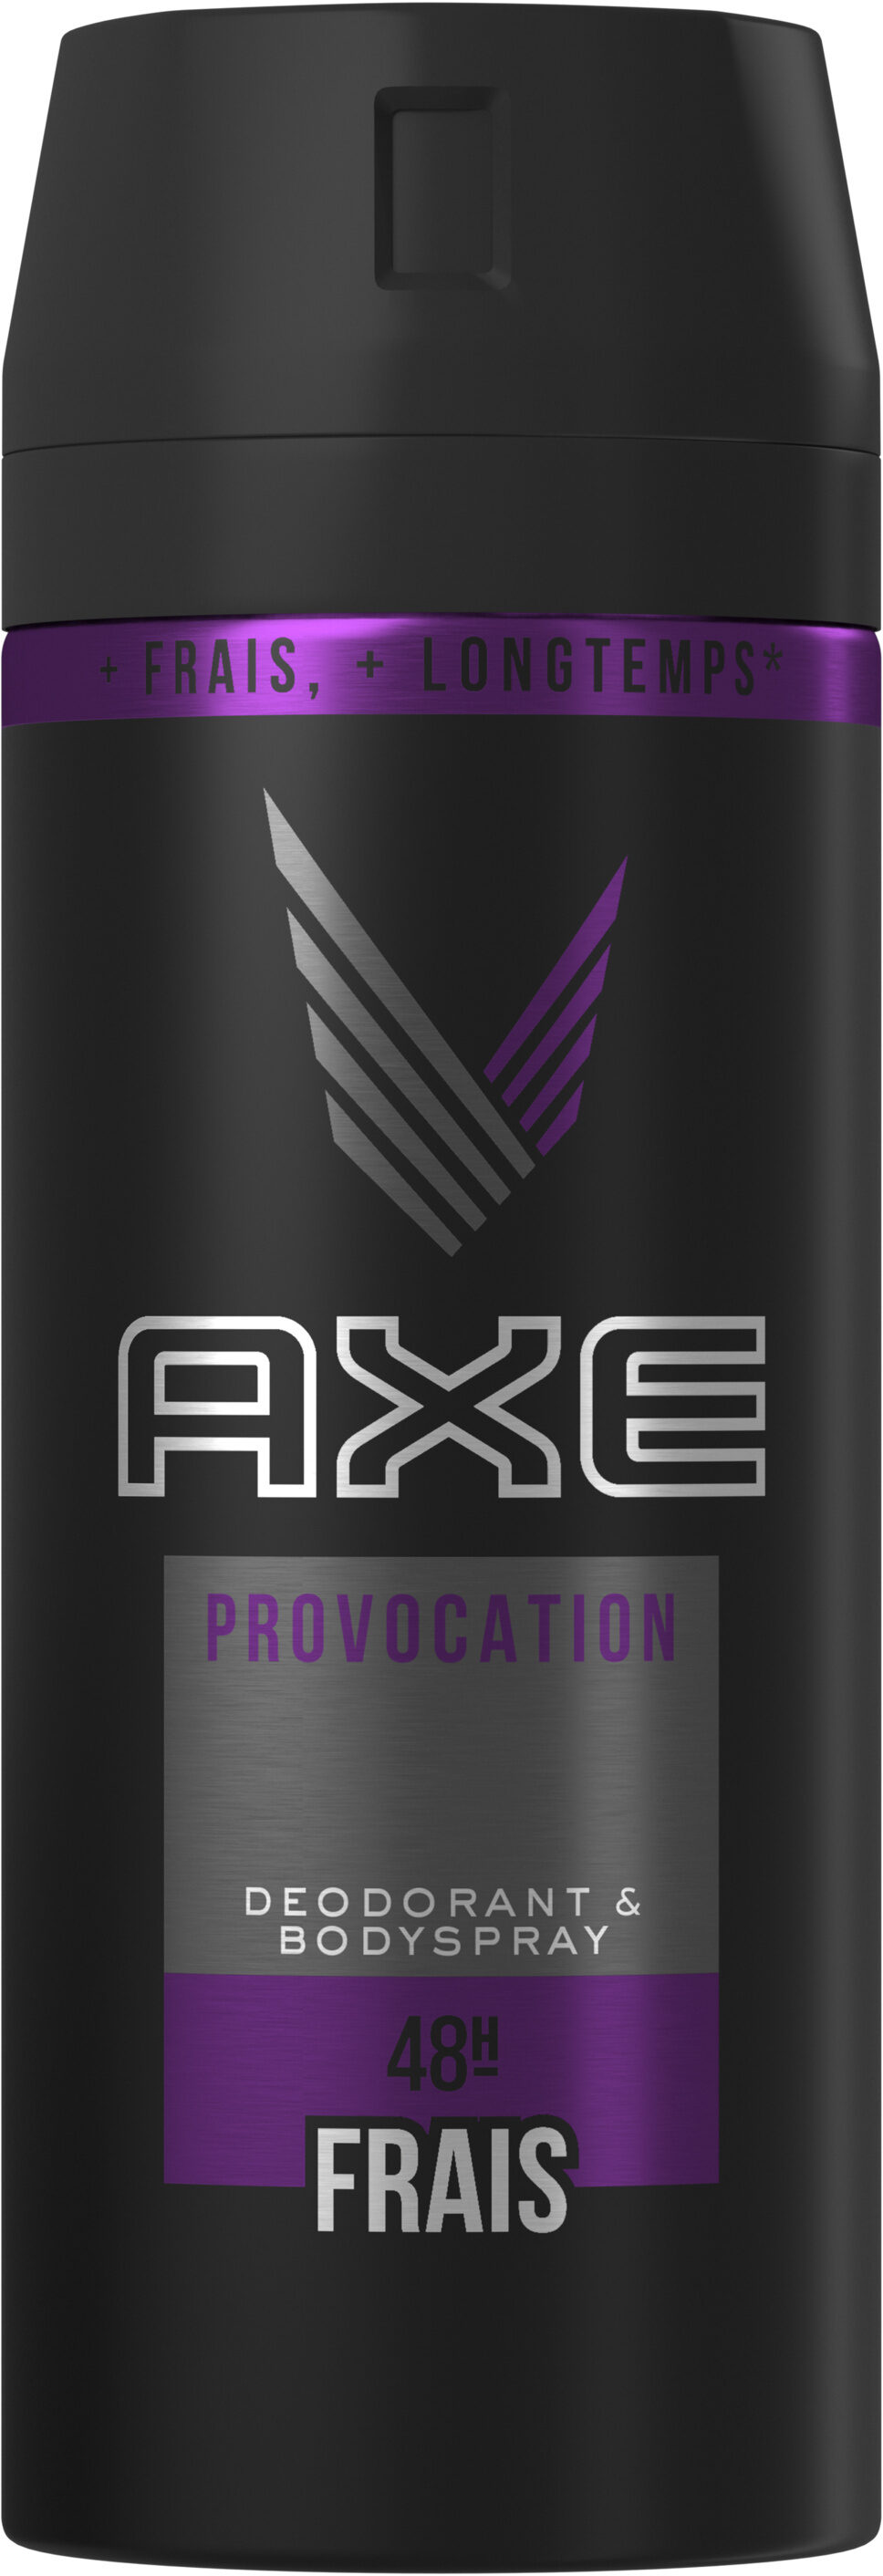 Axe Déodorant Bodyspray Homme Provocation 48h Non-Stop Frais 150ml - Tuote - fr